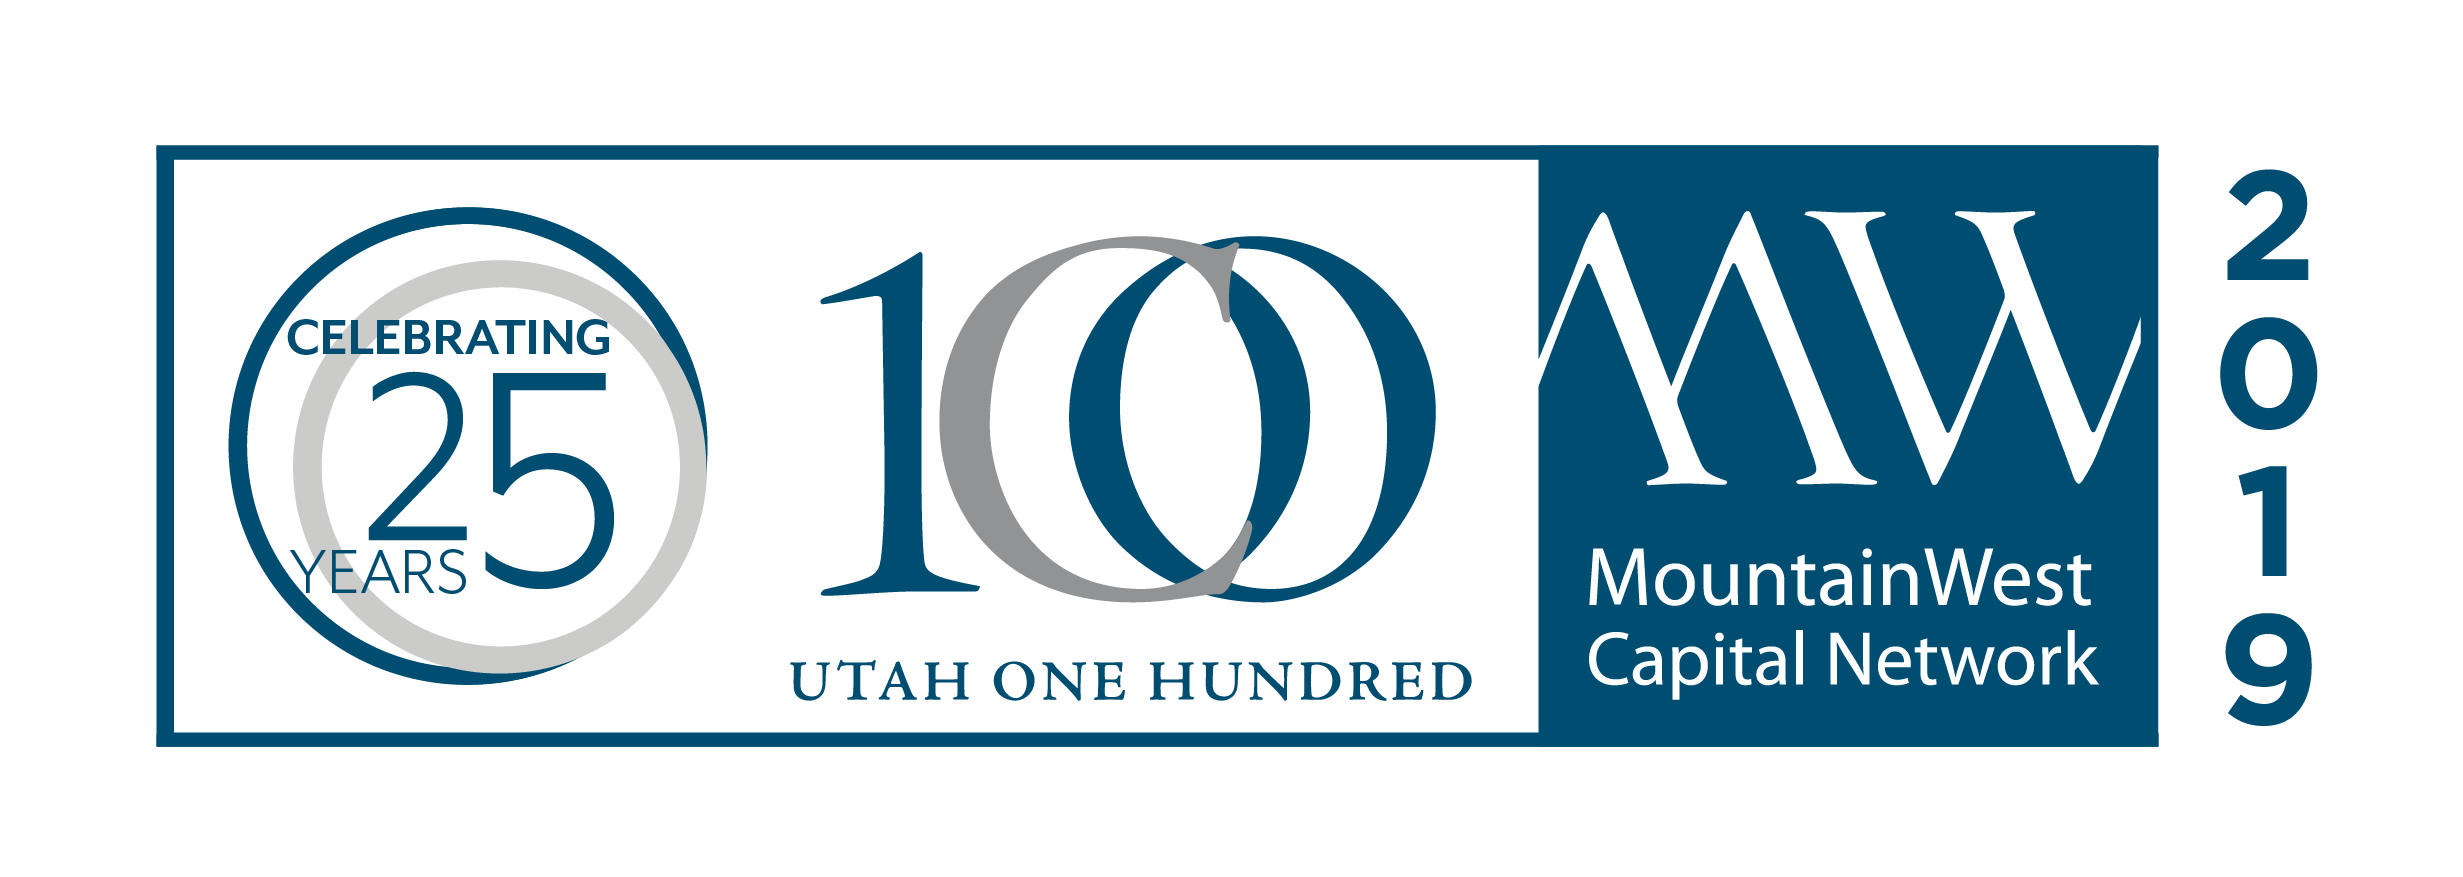 MWCN Utah 100 logo